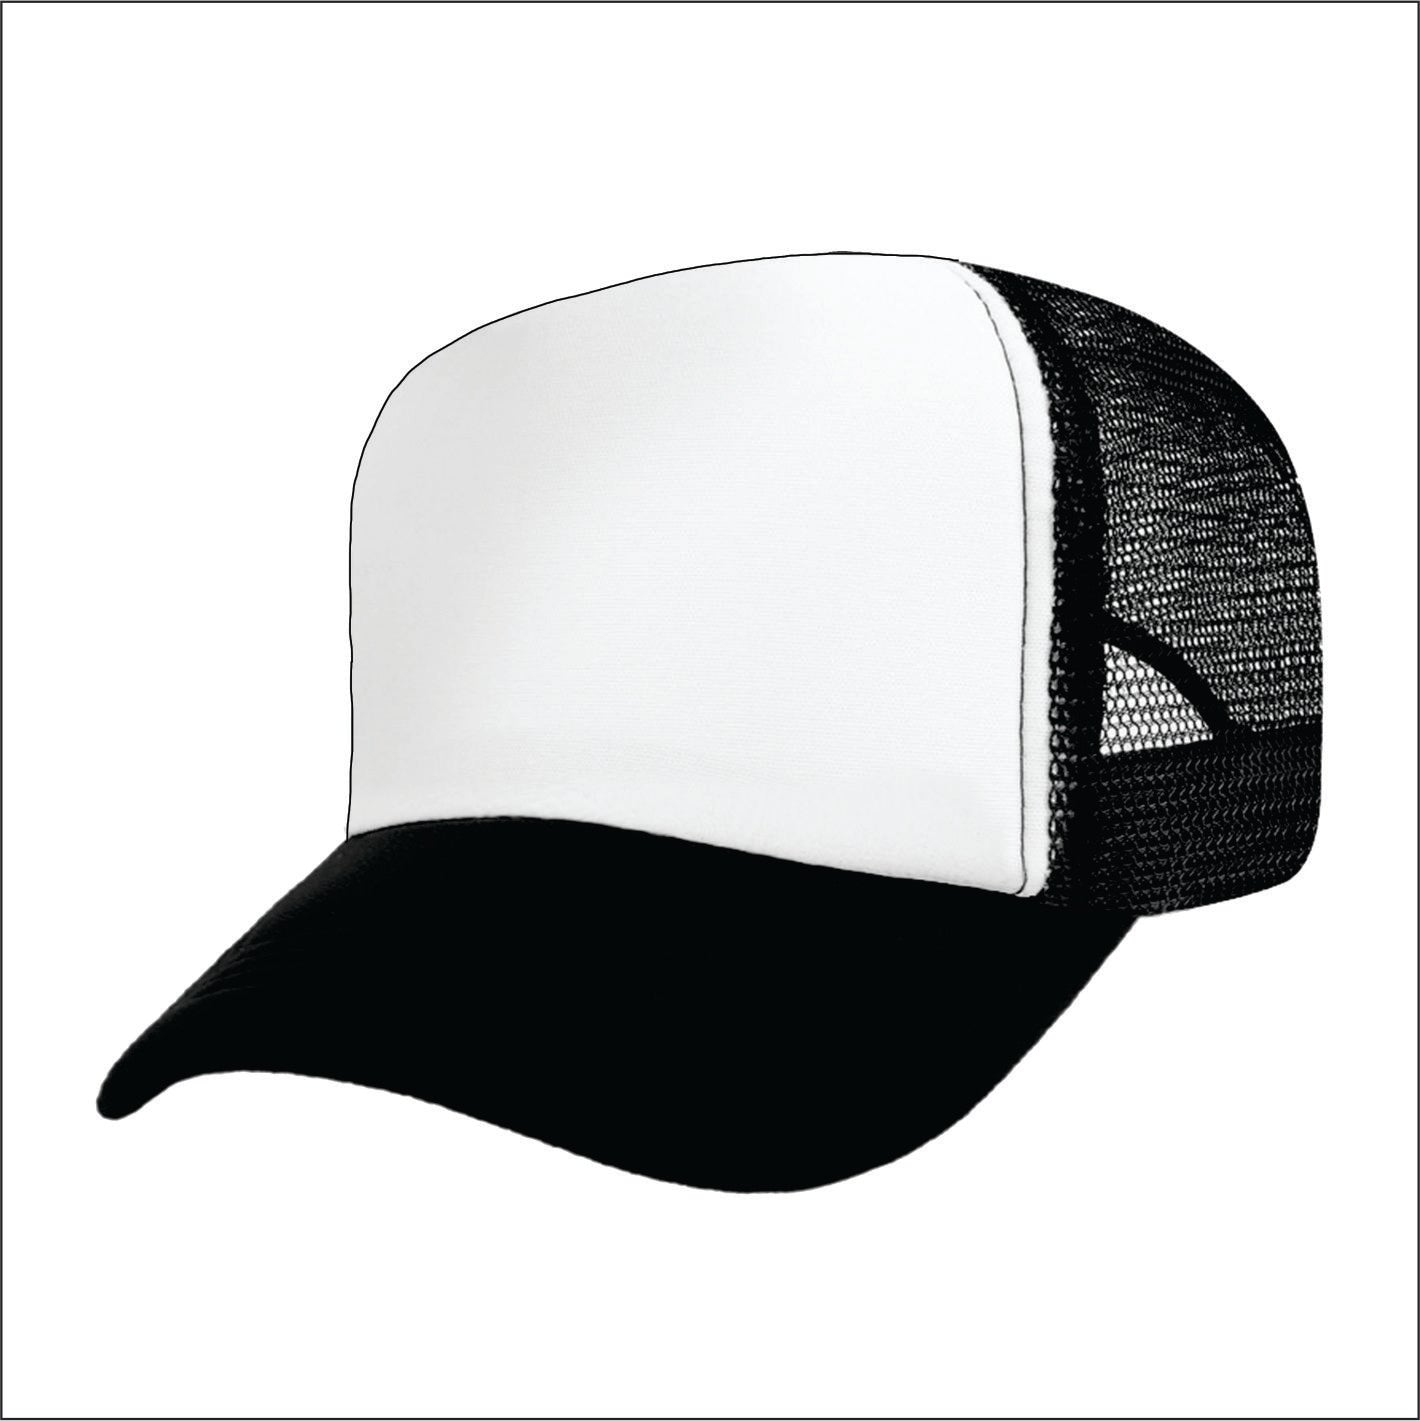 Designated Drunk Driver  Trucker hat